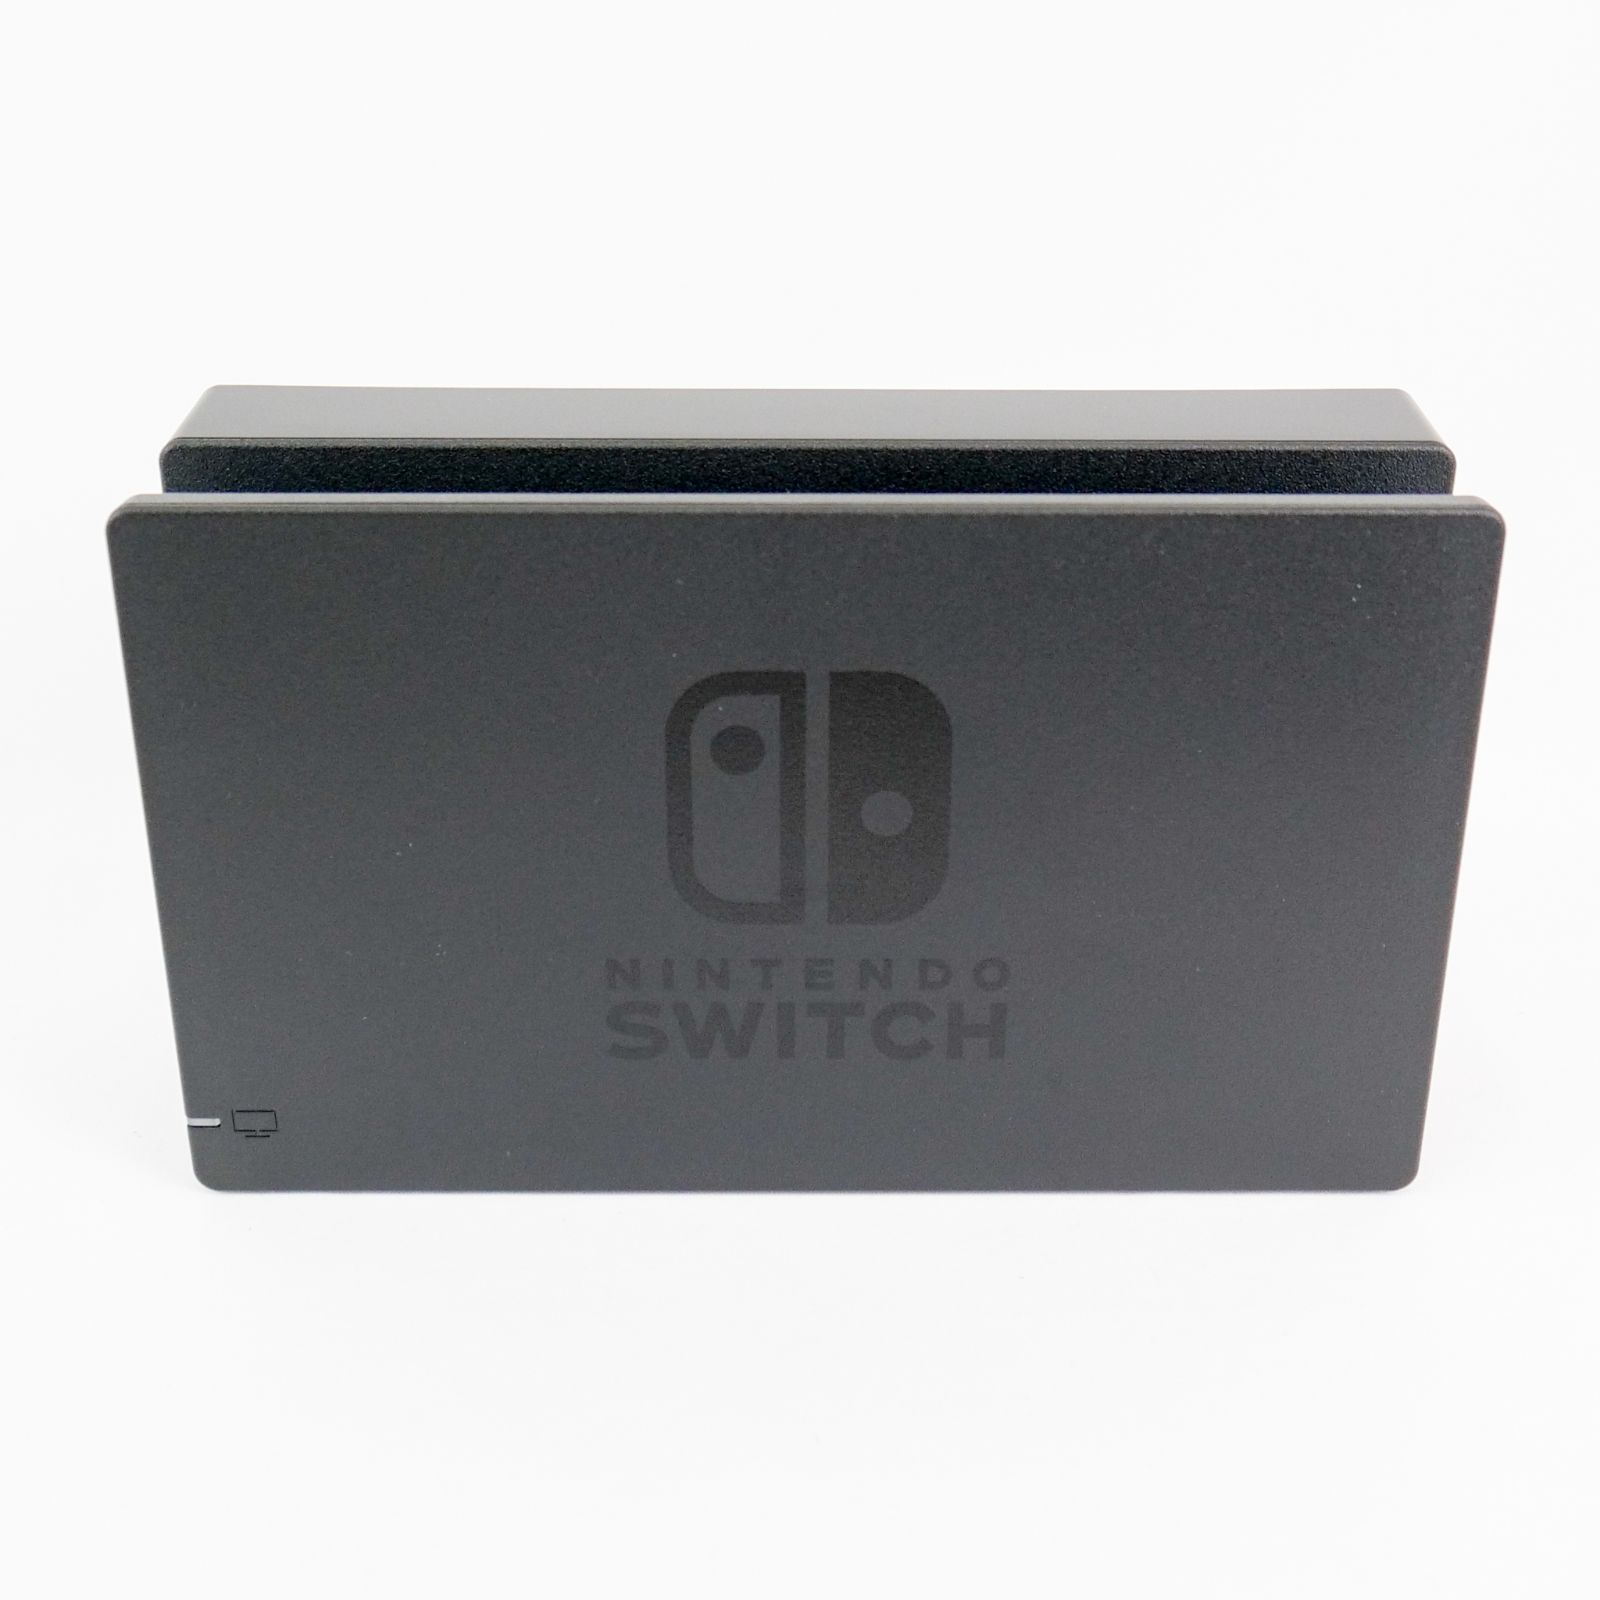 新品 Nintendo Switch ドックセット 純正品 ニンテンドー スイッチ 外